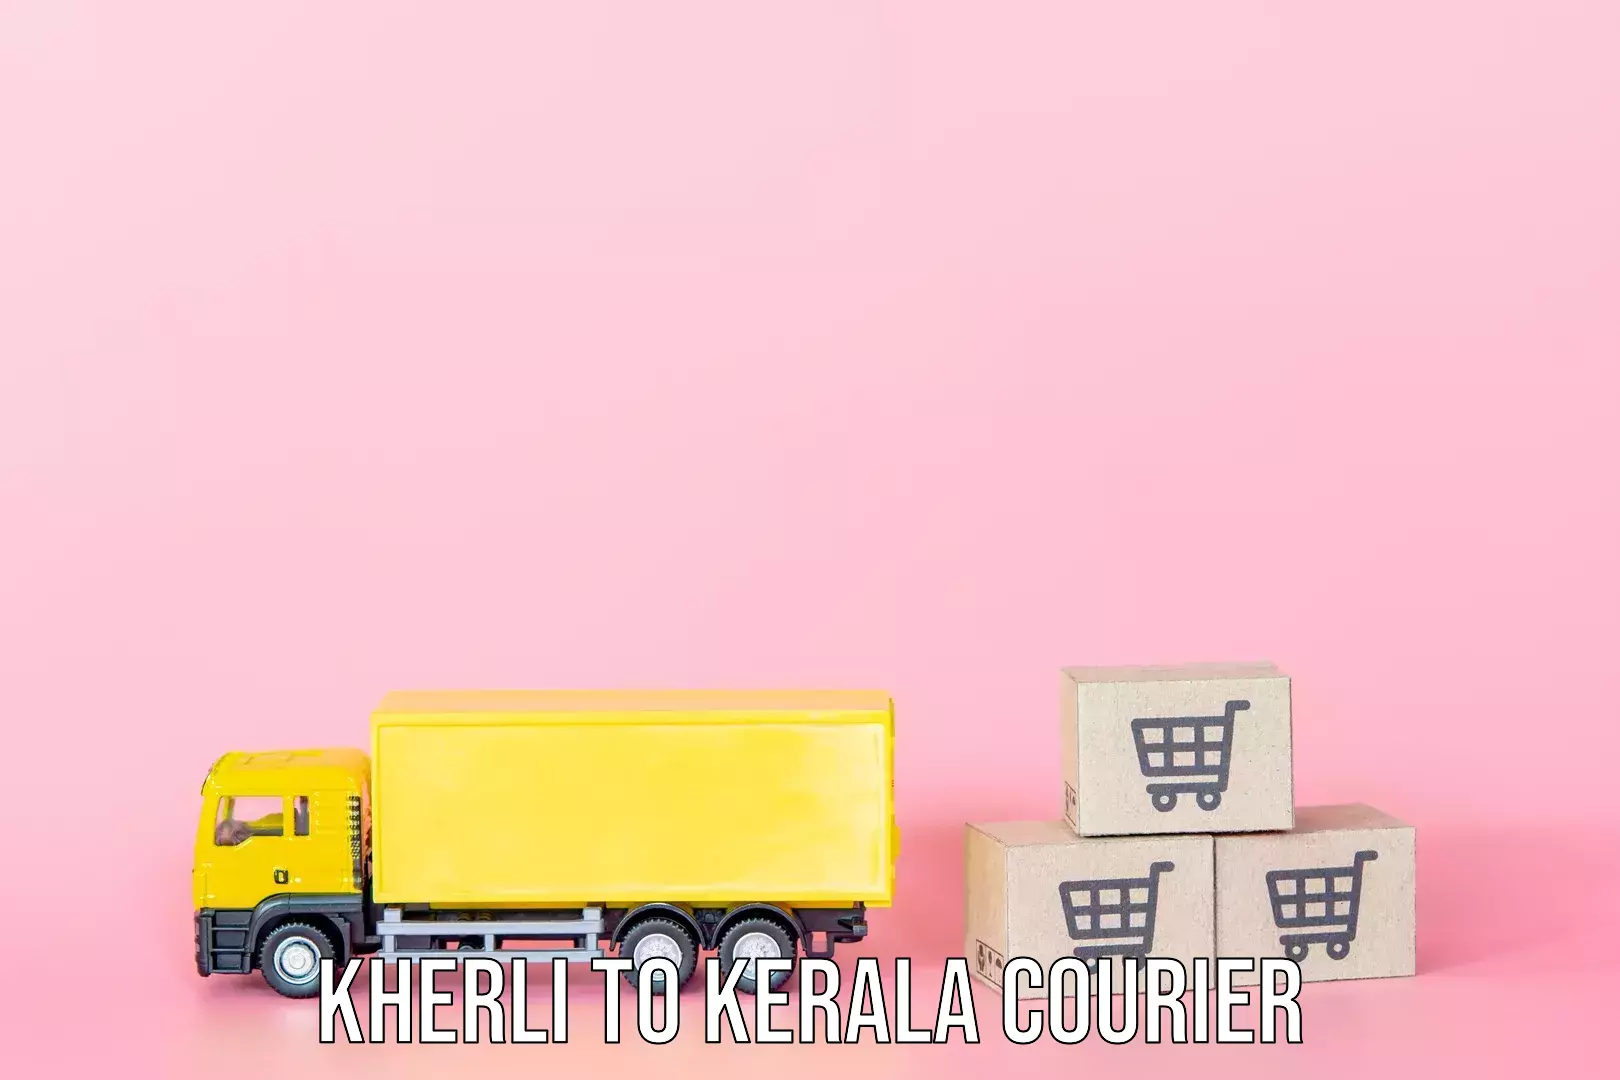 Luggage transport company Kherli to Kallachi